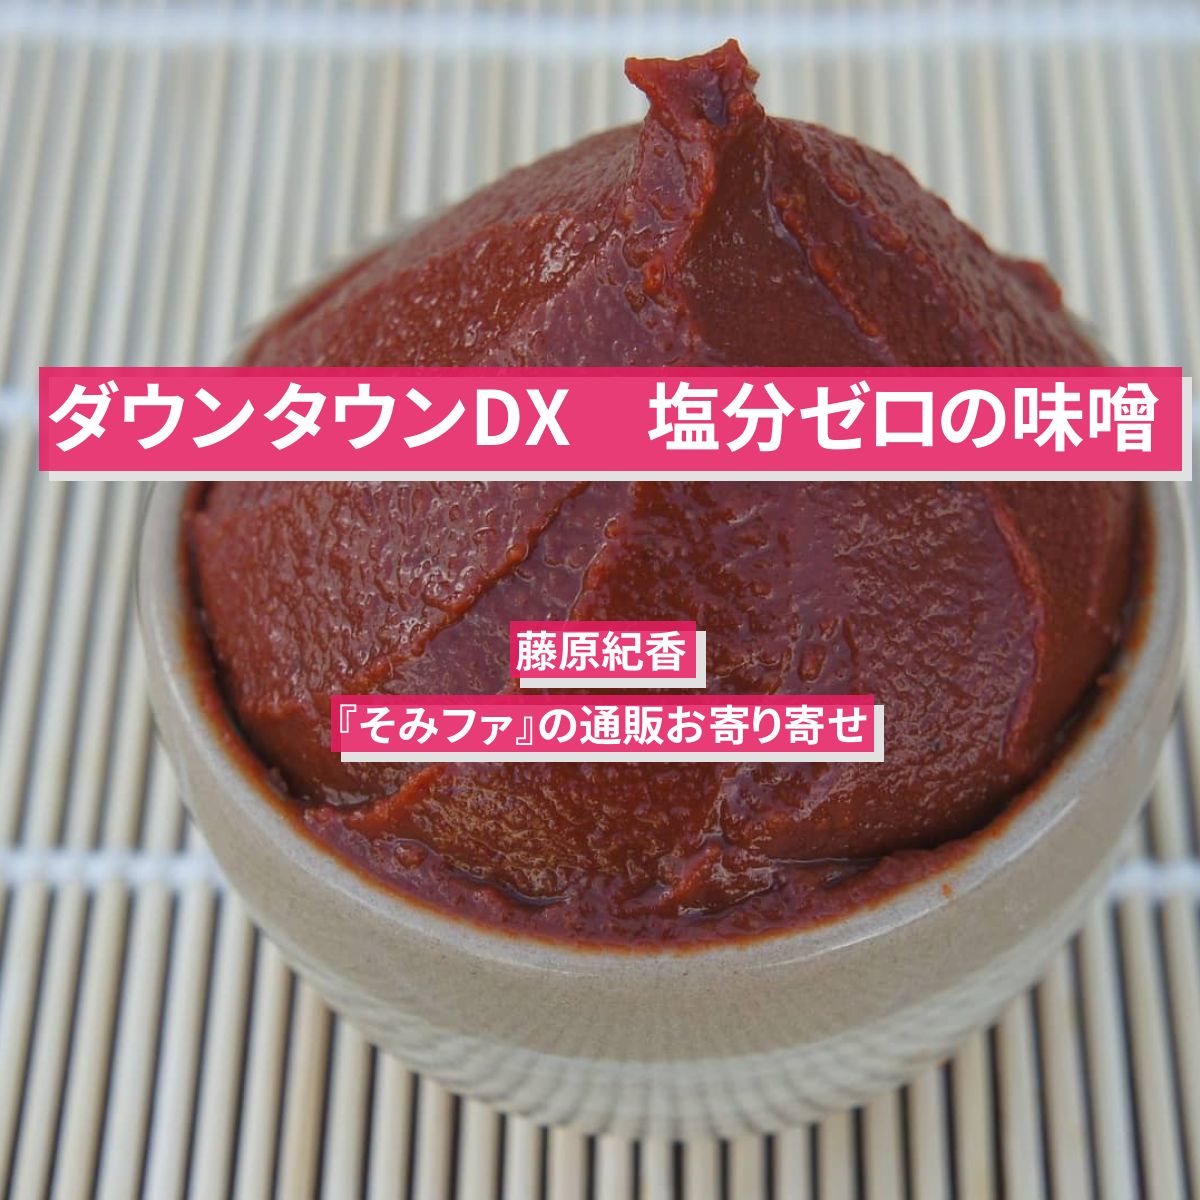 【ダウンタウンDX】塩分ゼロの味噌　藤原紀香『そみファ』の通販お寄り寄せ情報